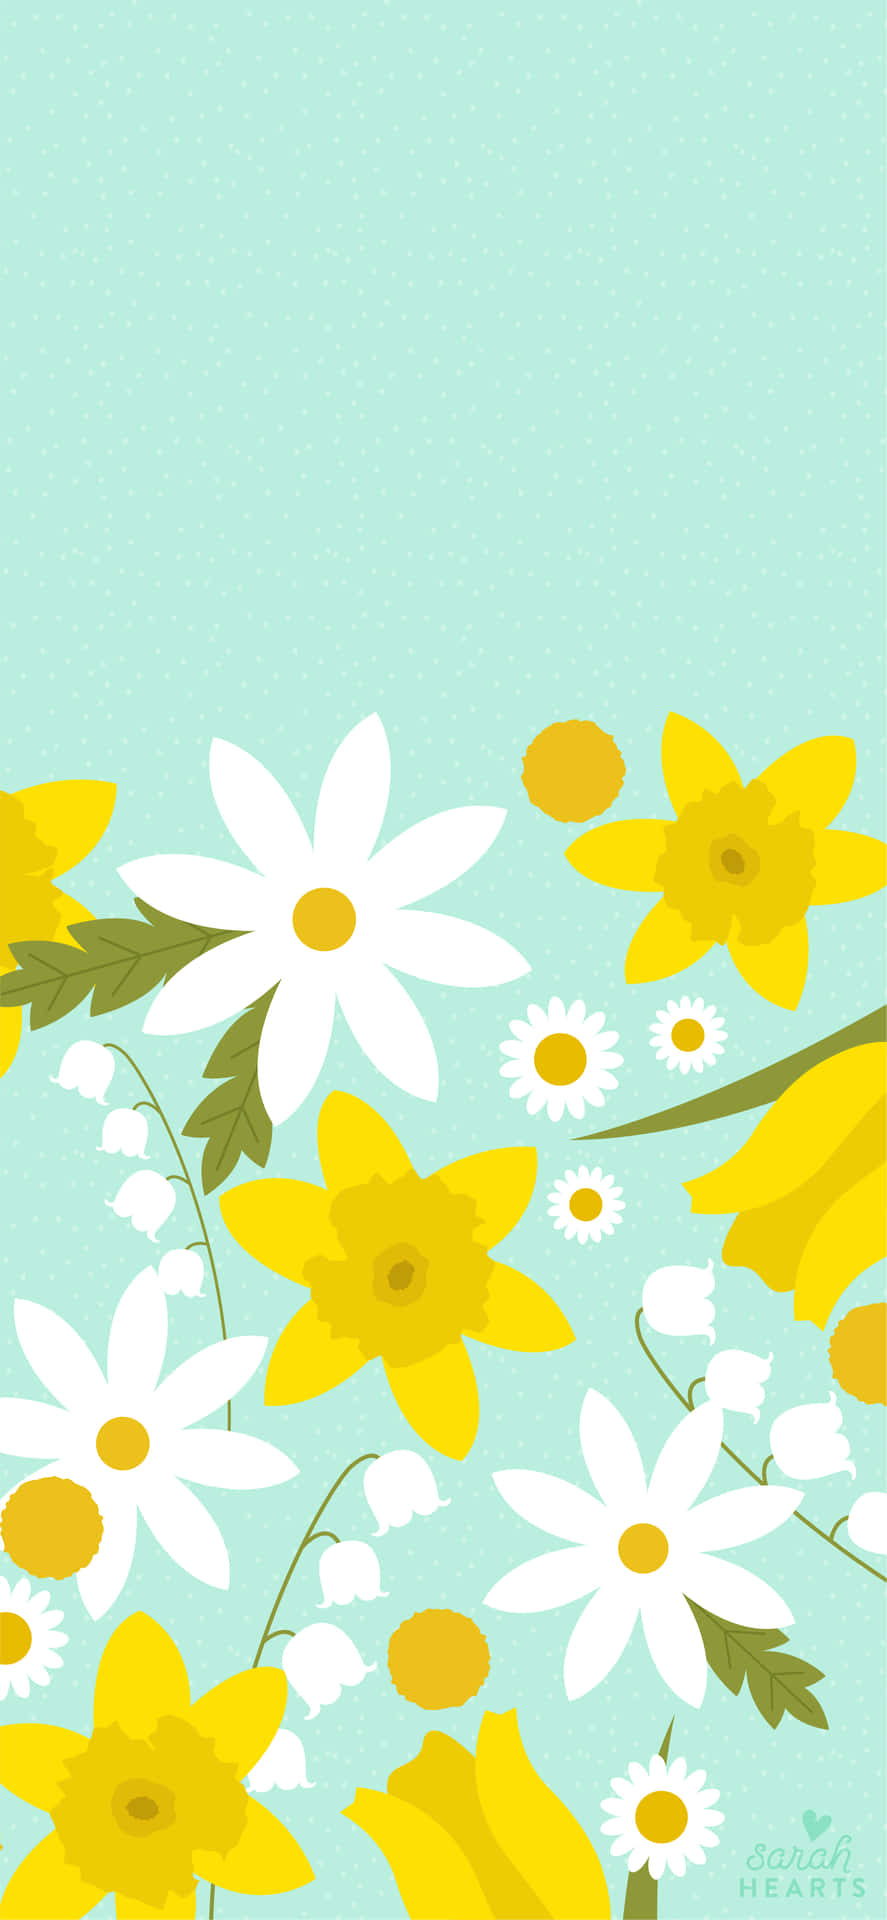 Erhellensie Ihren Tag Mit Einem Süßen Frühlingshintergrund Für Ihr Iphone! Wallpaper